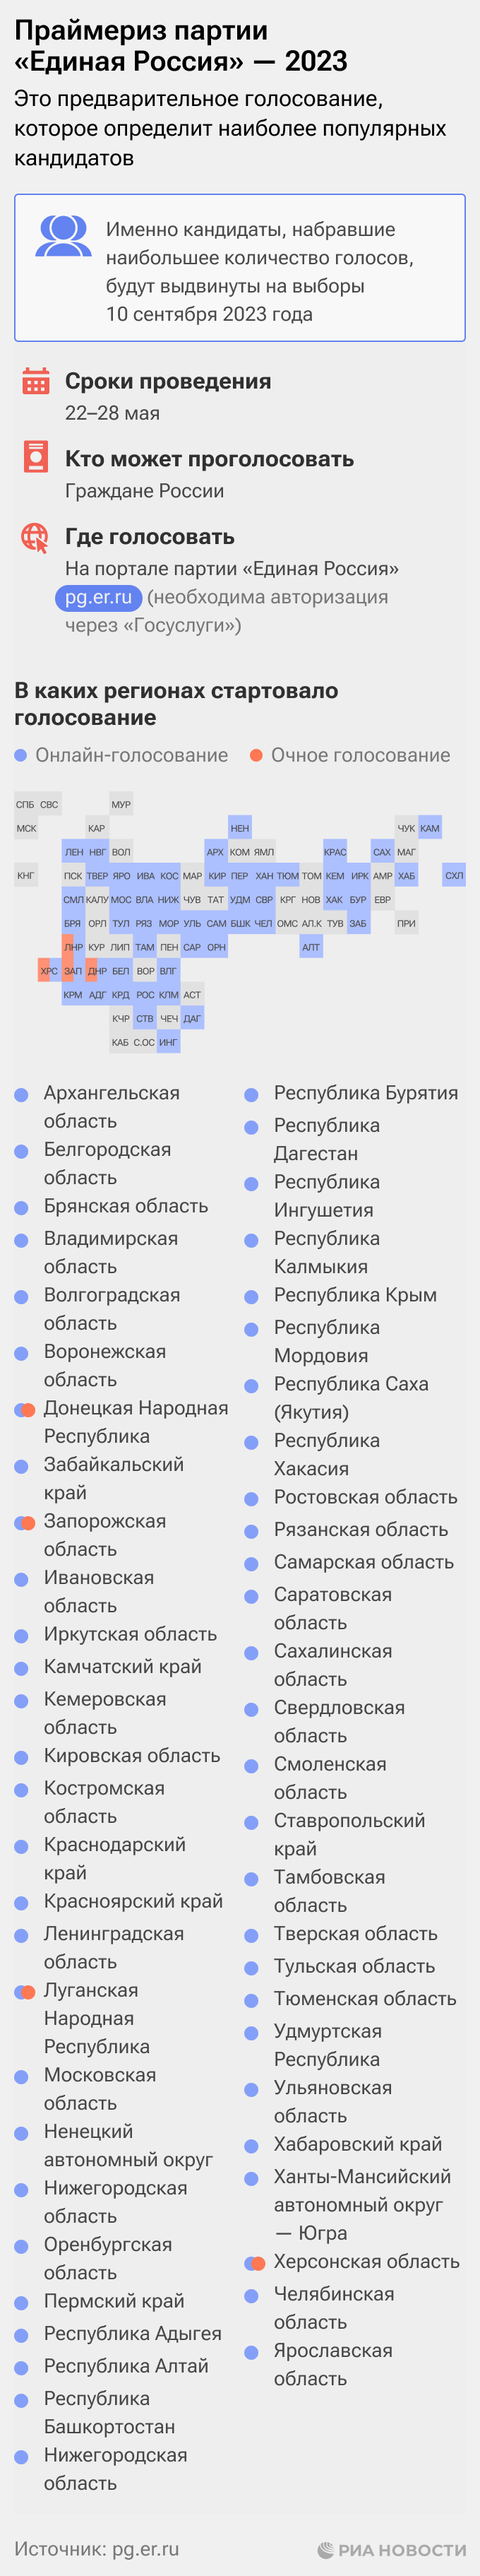 Праймериз партии "Единая Россия" — 2023